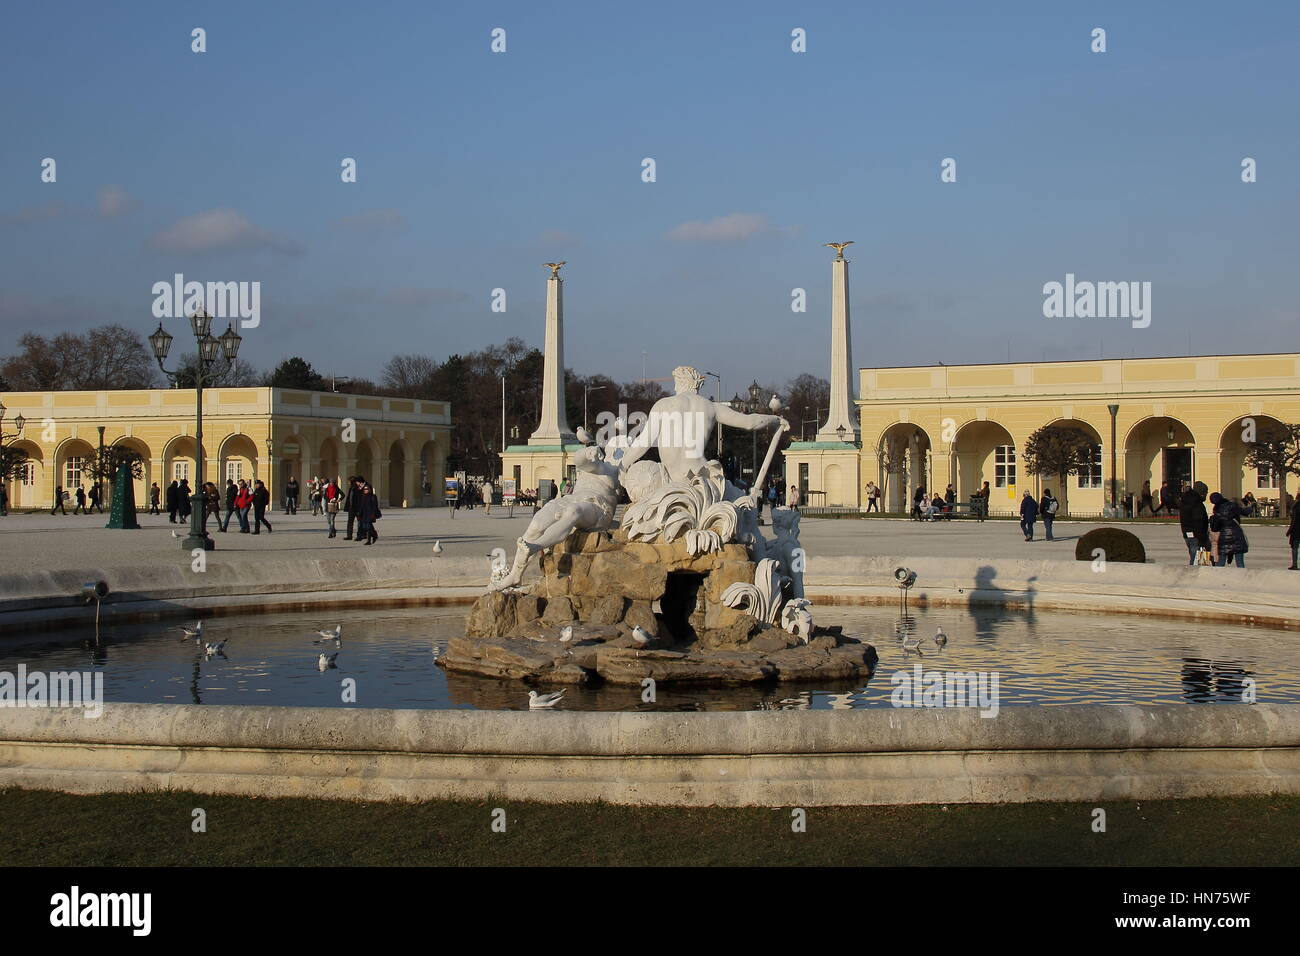 Une fontaine et des statues à Schloss Shonbrunn à Vienne Autriche libre au format paysage with copy space Banque D'Images